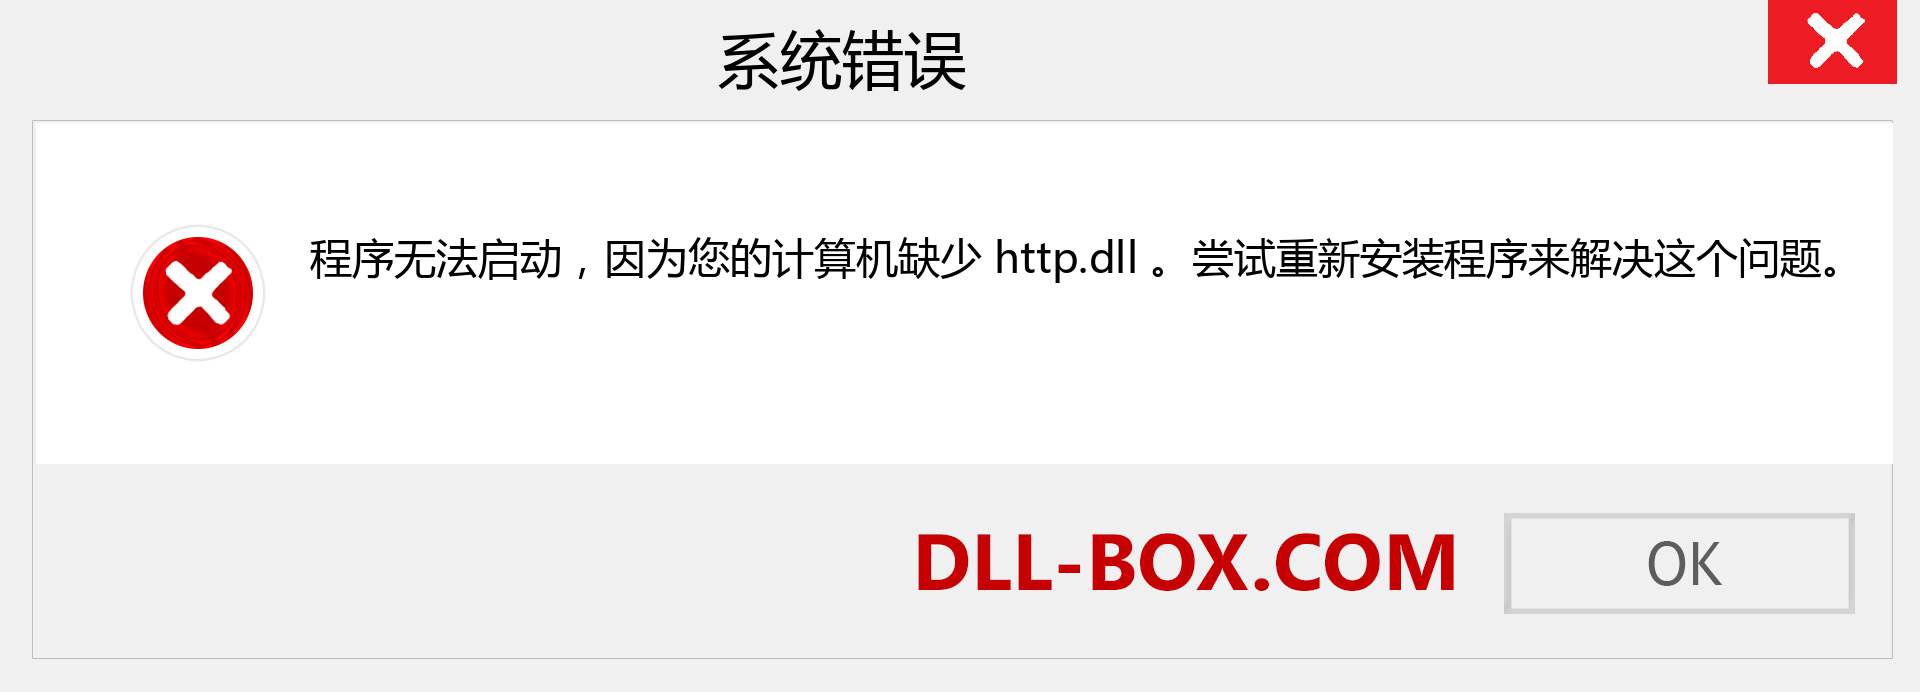 http.dll 文件丢失？。 适用于 Windows 7、8、10 的下载 - 修复 Windows、照片、图像上的 http dll 丢失错误